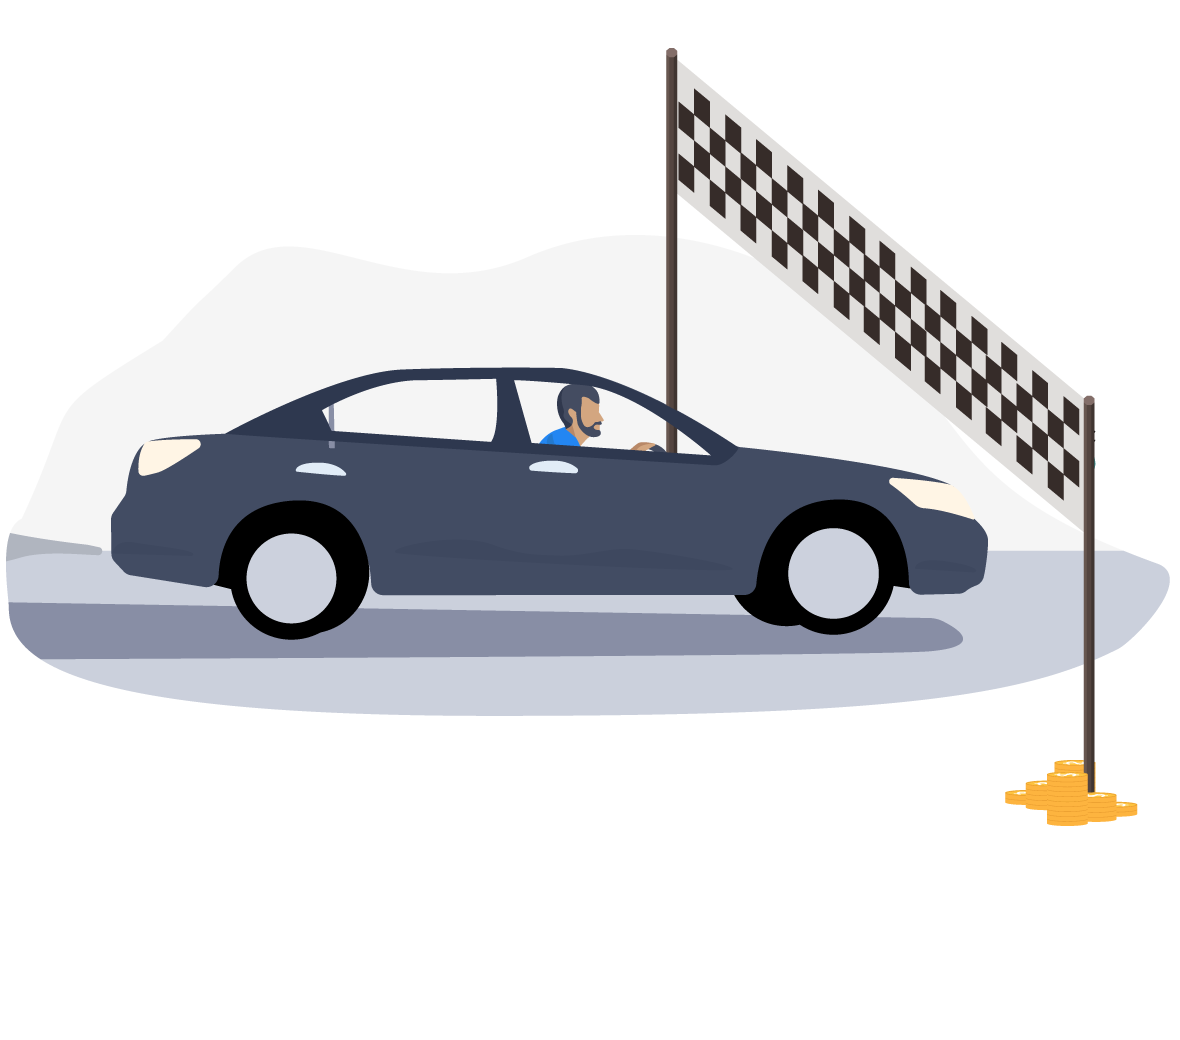 En illustration af en bil, der kører ind over en målstreg